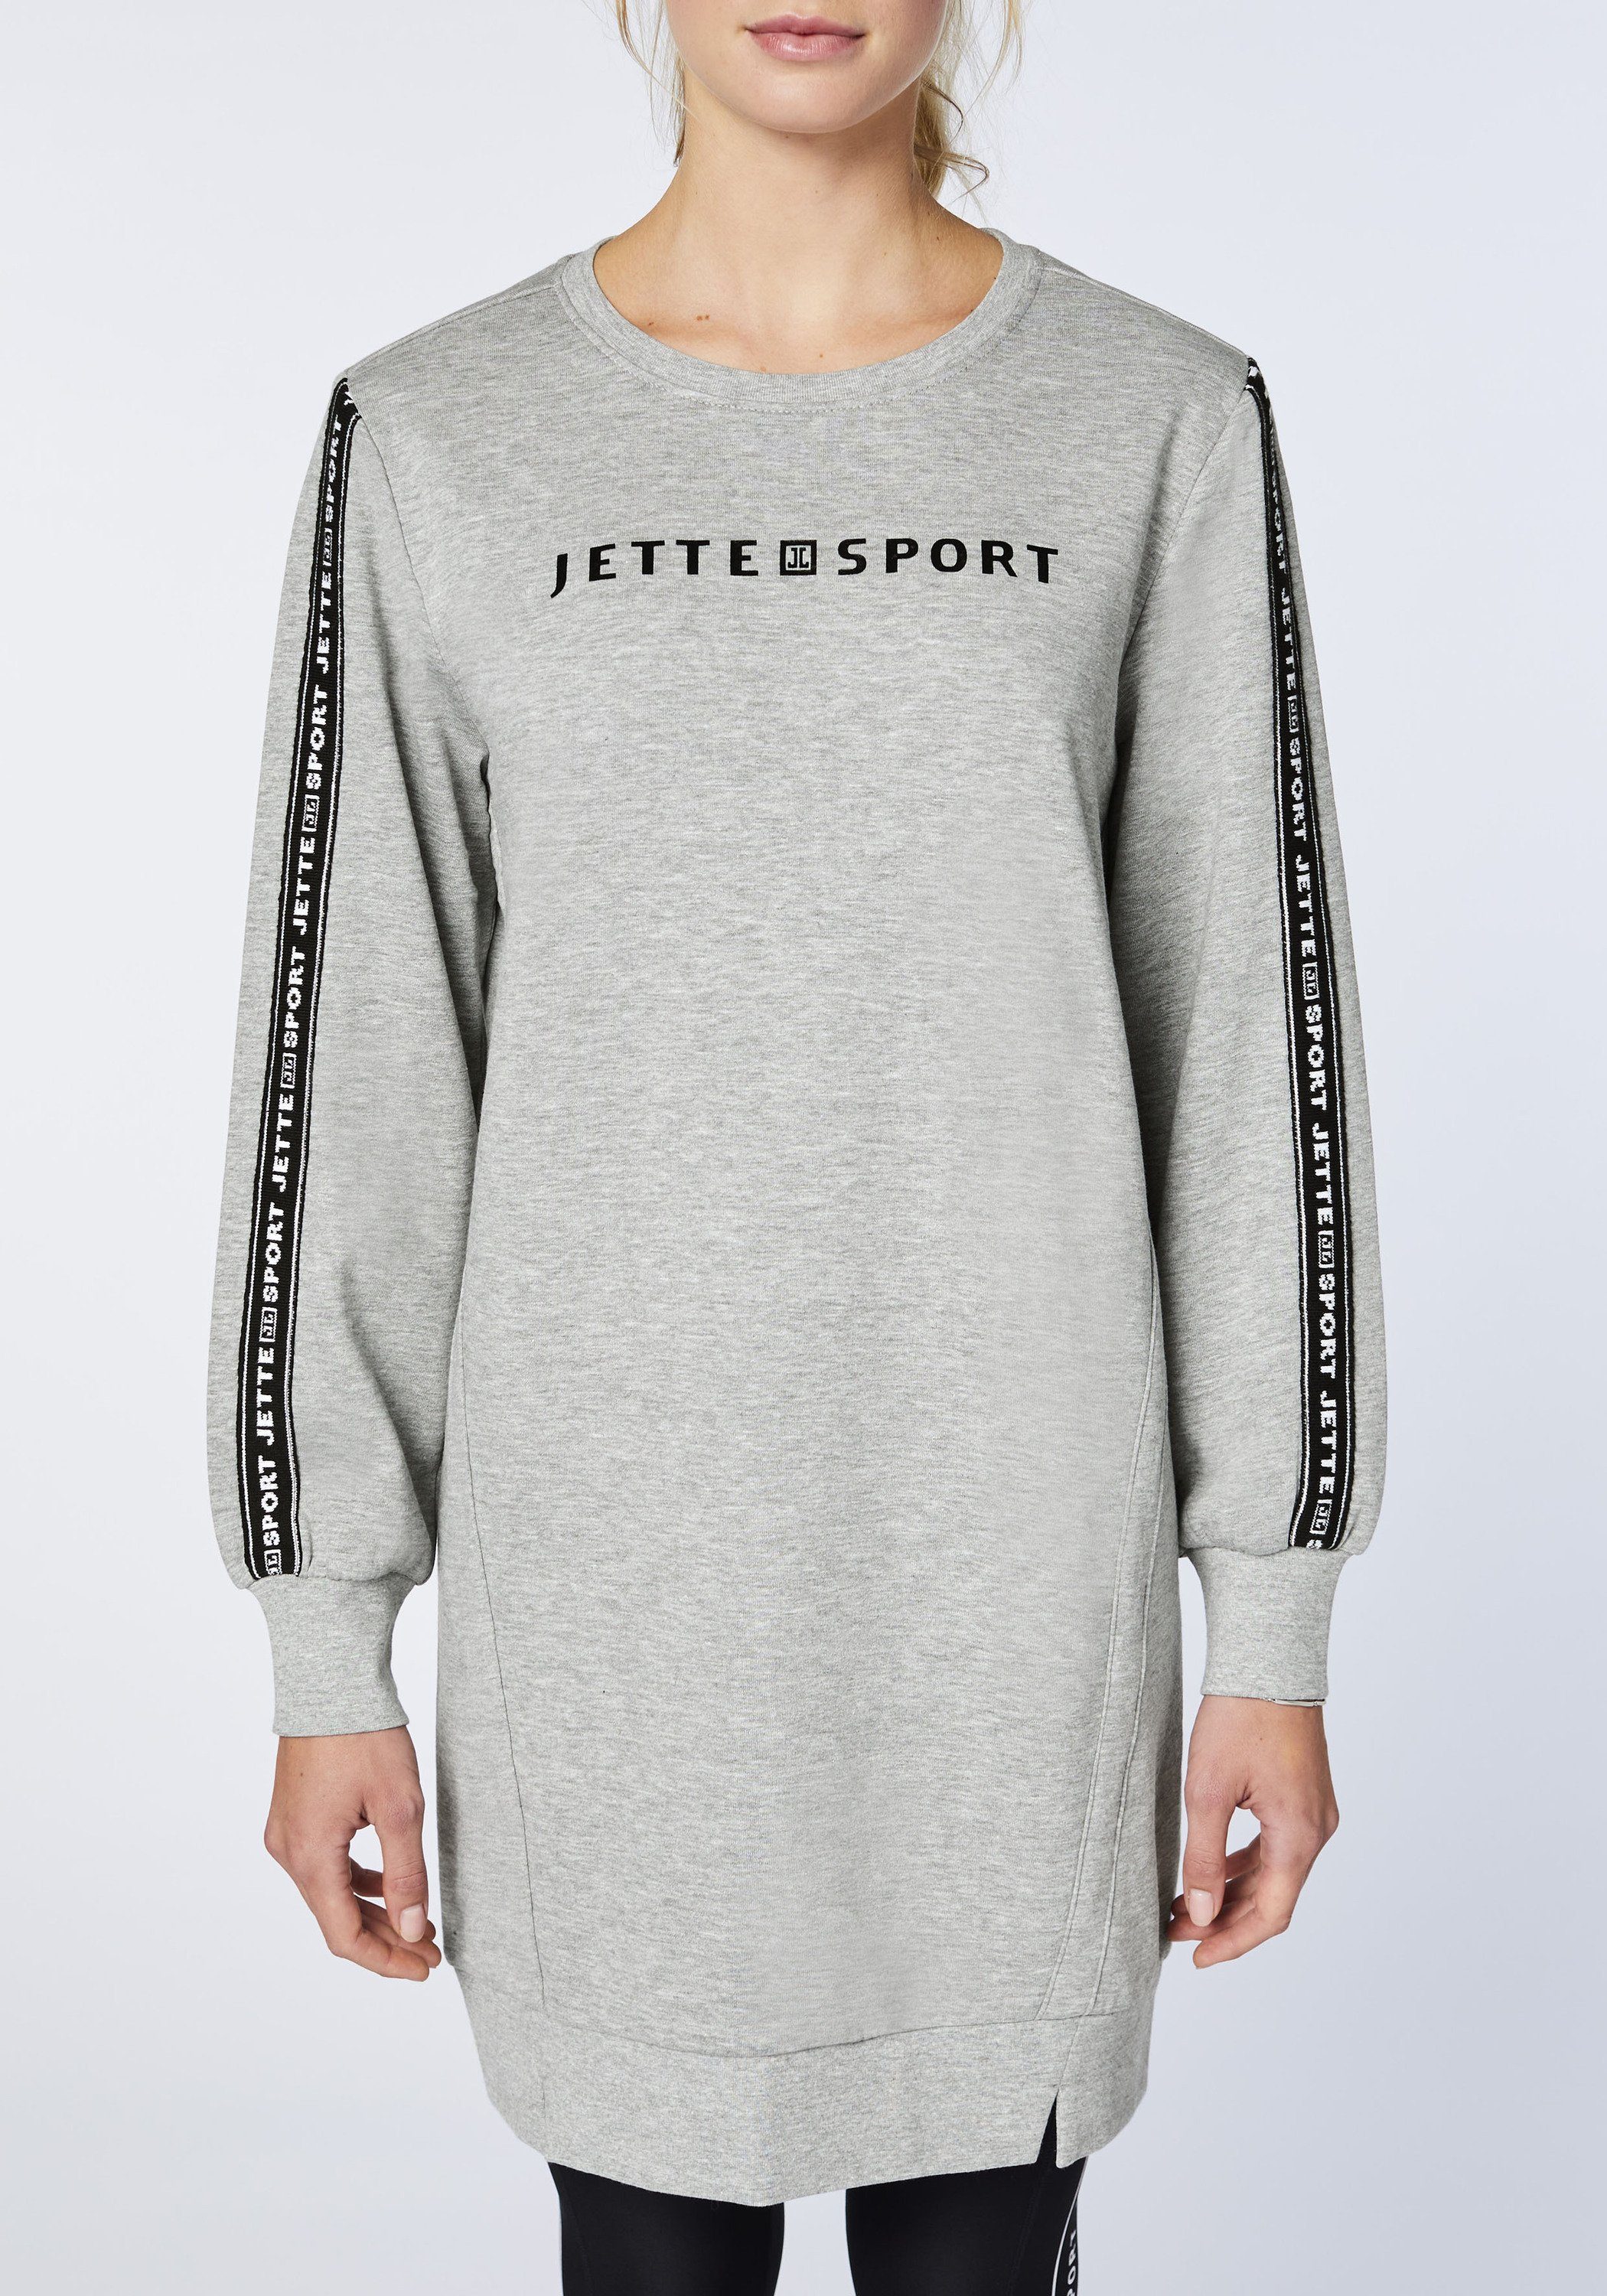 Neutral Melange Gray Sweatkleid JETTE mit 17-4402M SPORT Logo-Dekor